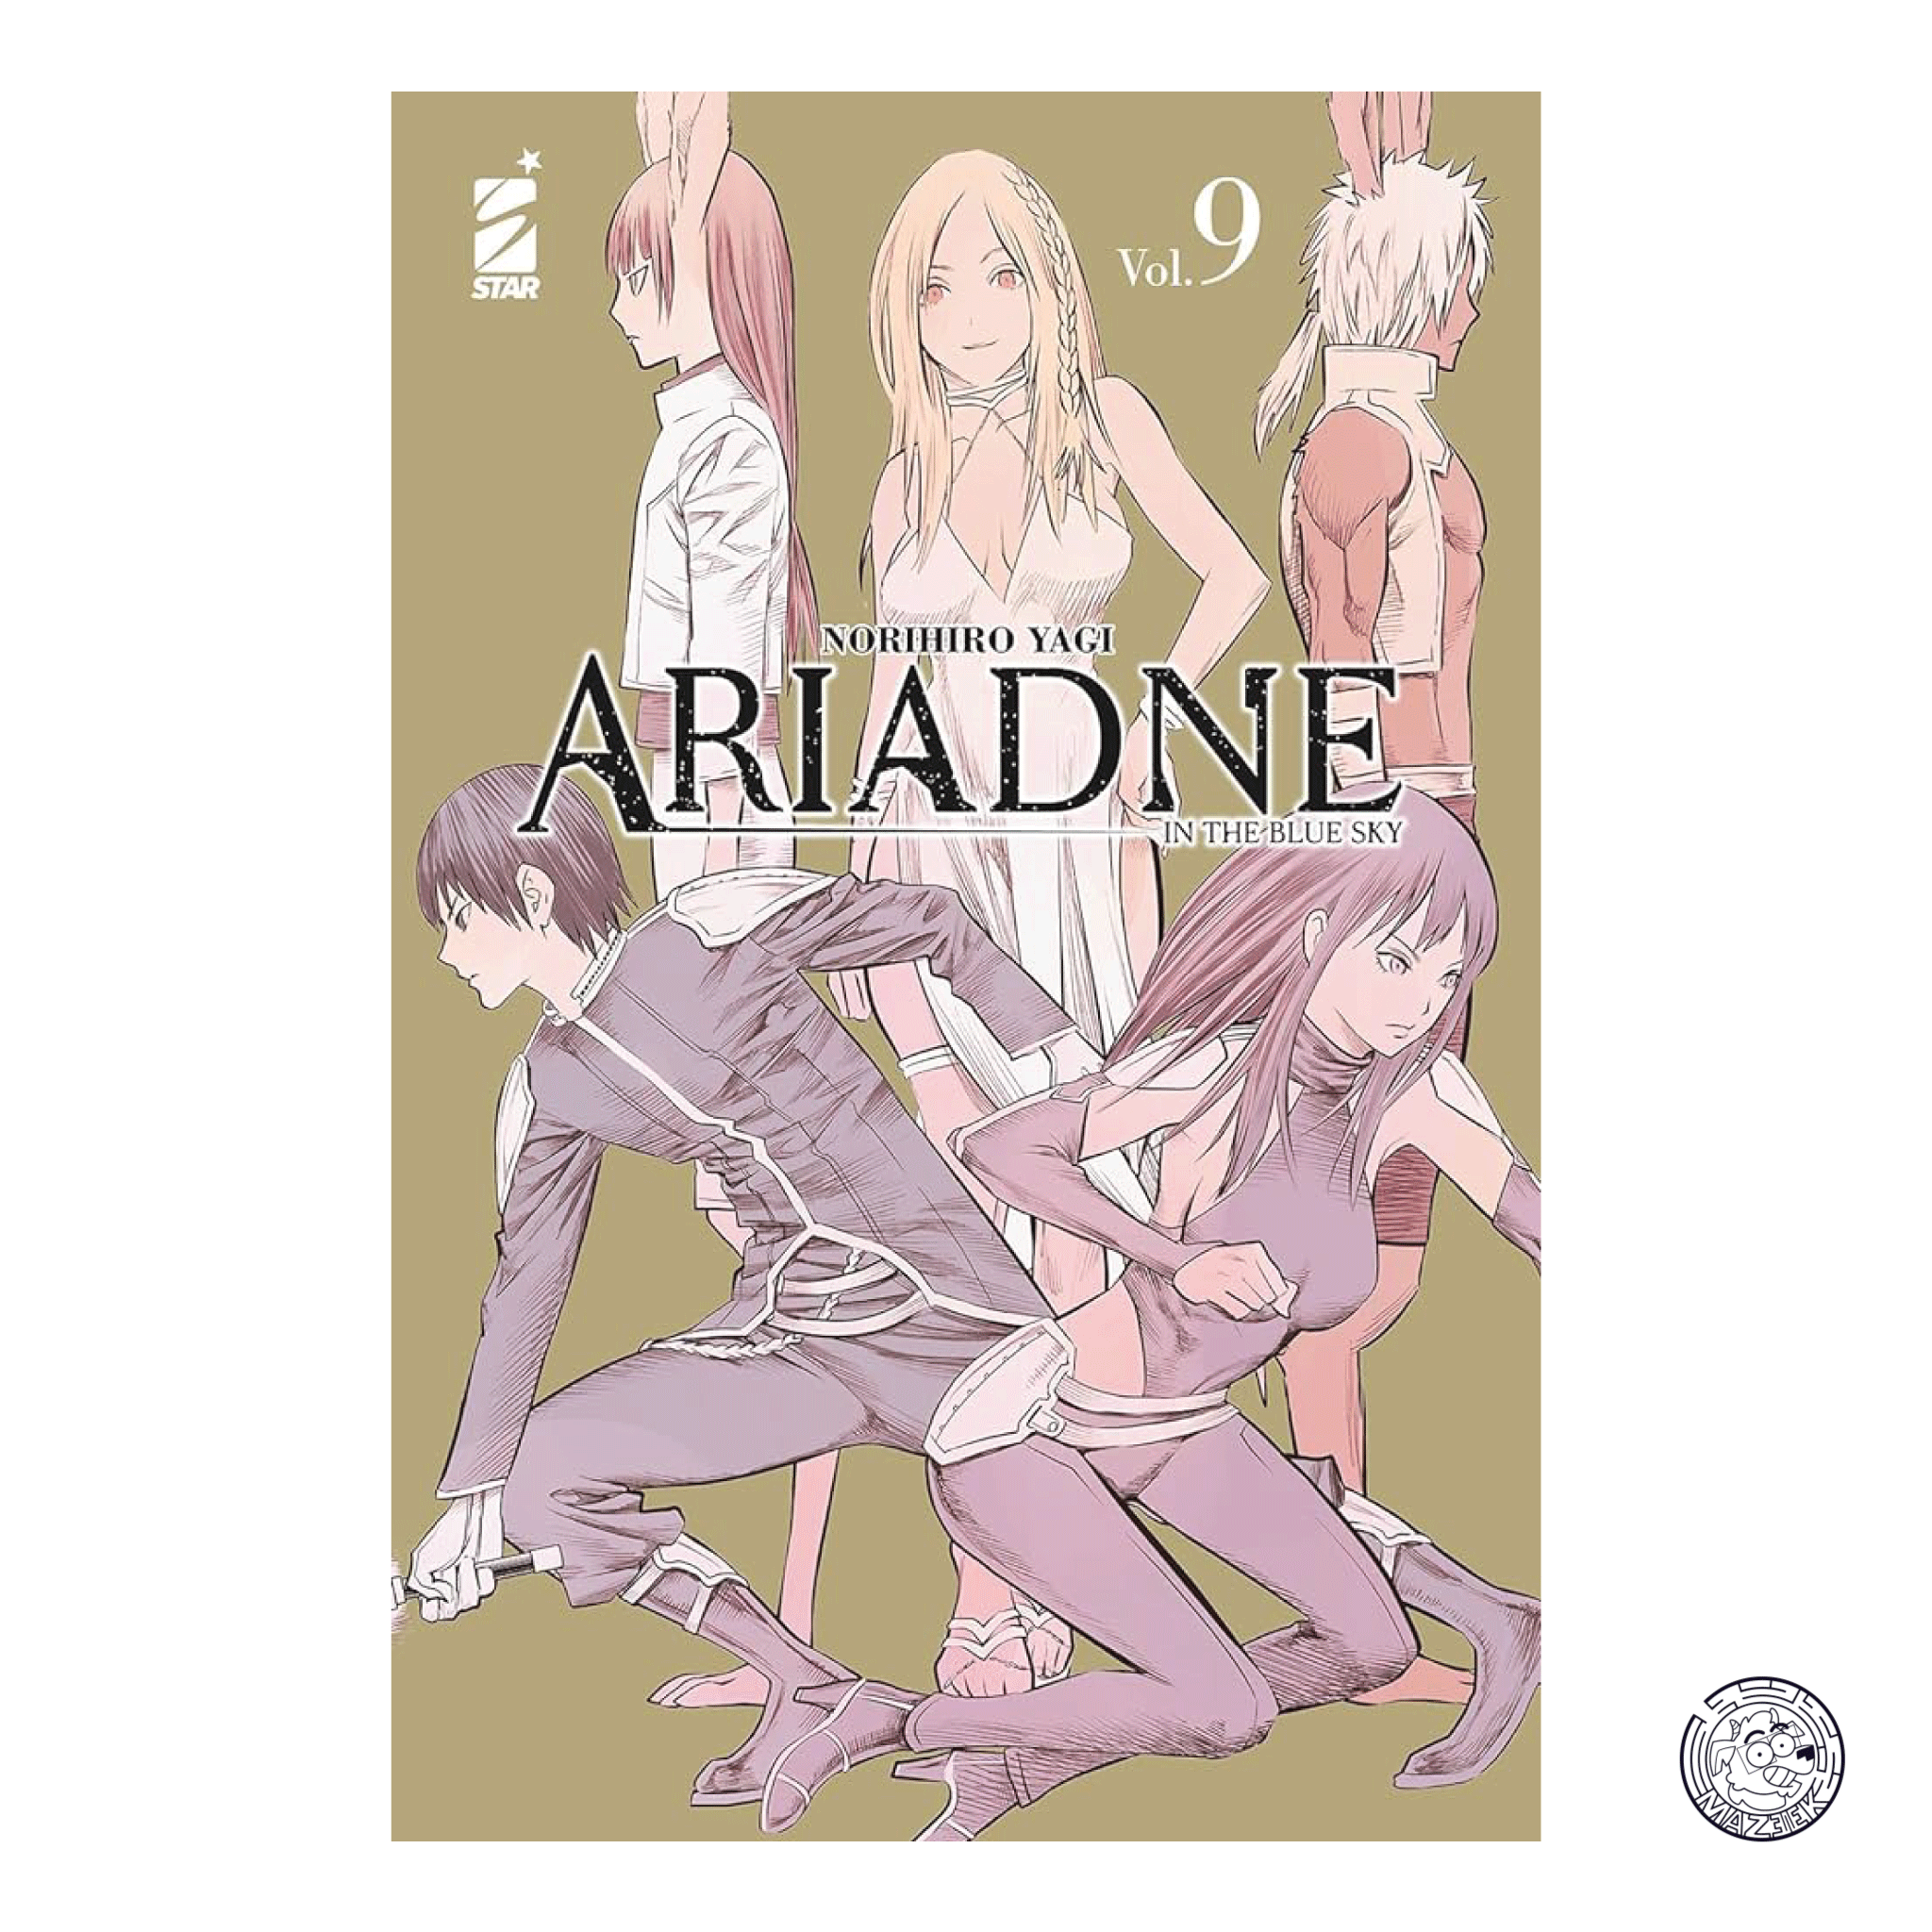 Ariadne in the Blue Sky 09